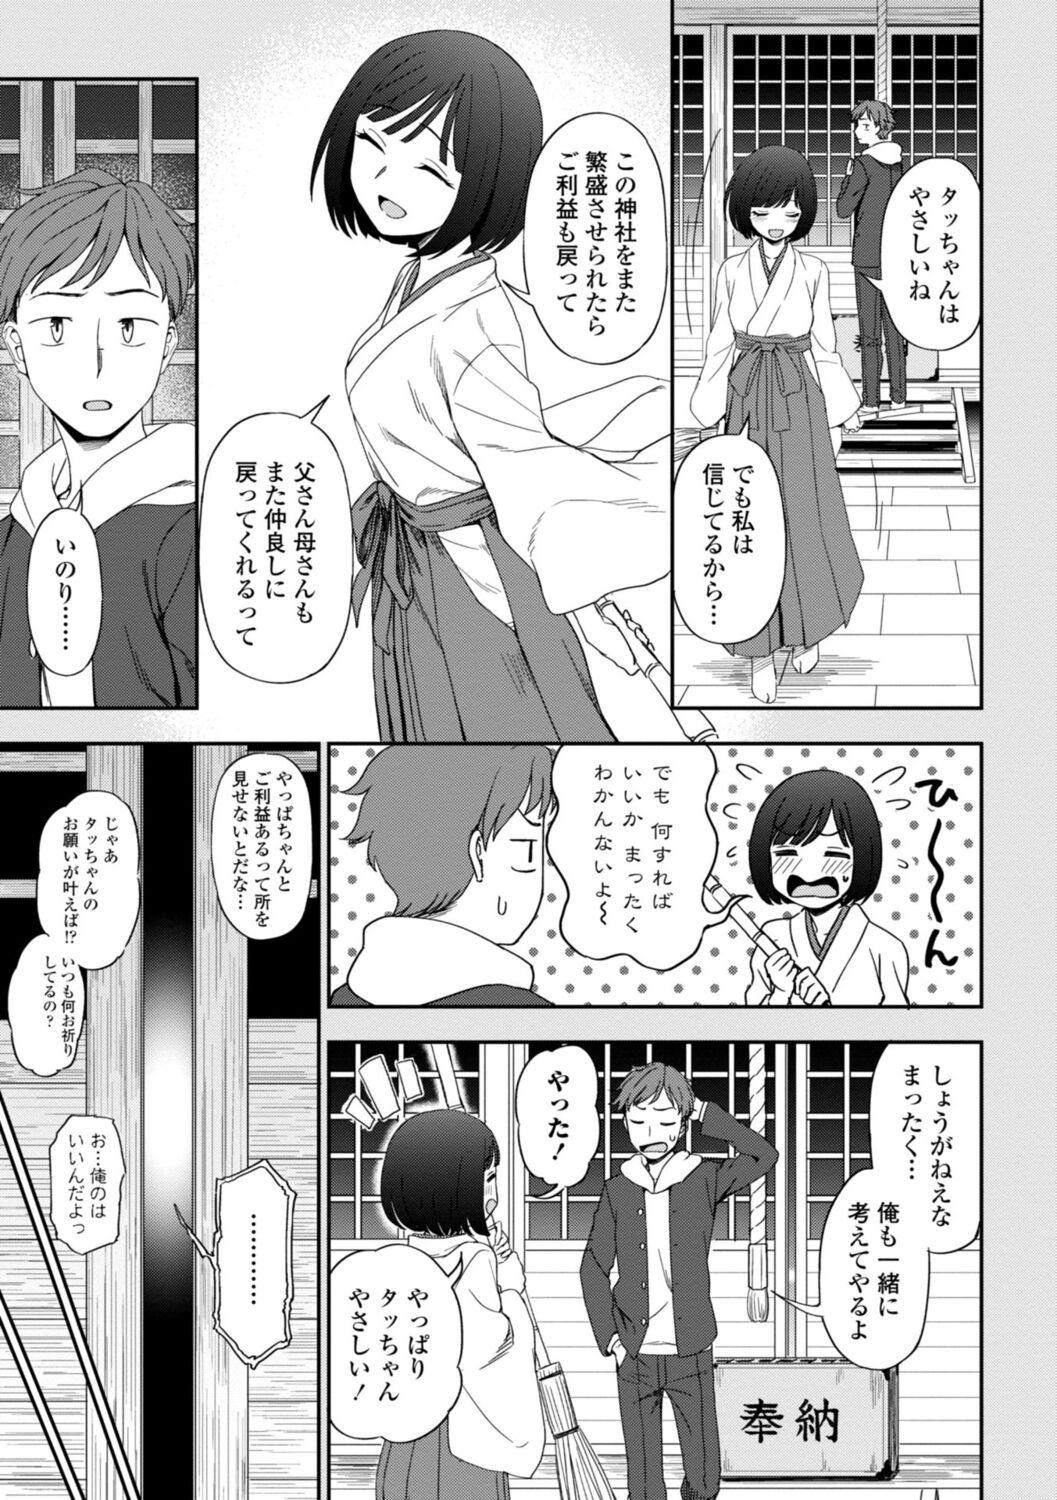 Cavalgando Watashi no Subete Sasagemasu - I'll give you all of mine. Tetas - Page 7